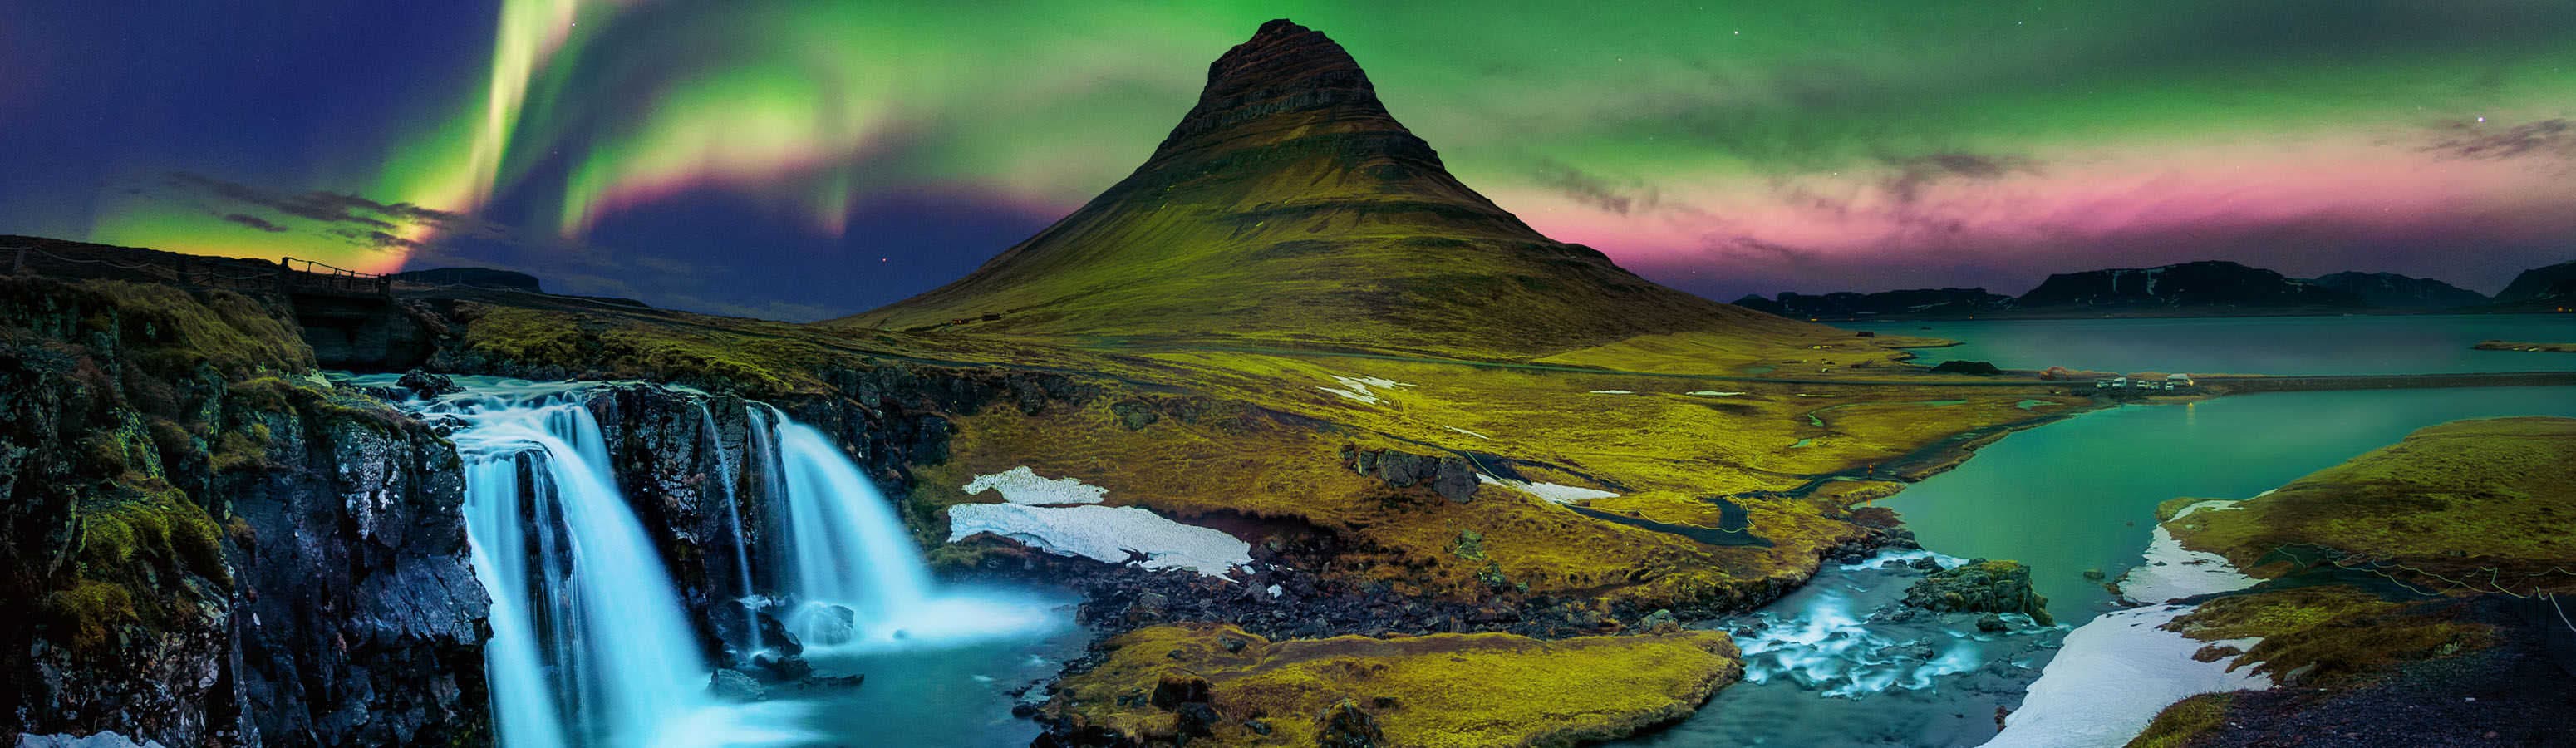 Исландия - когда природа рисует в небе